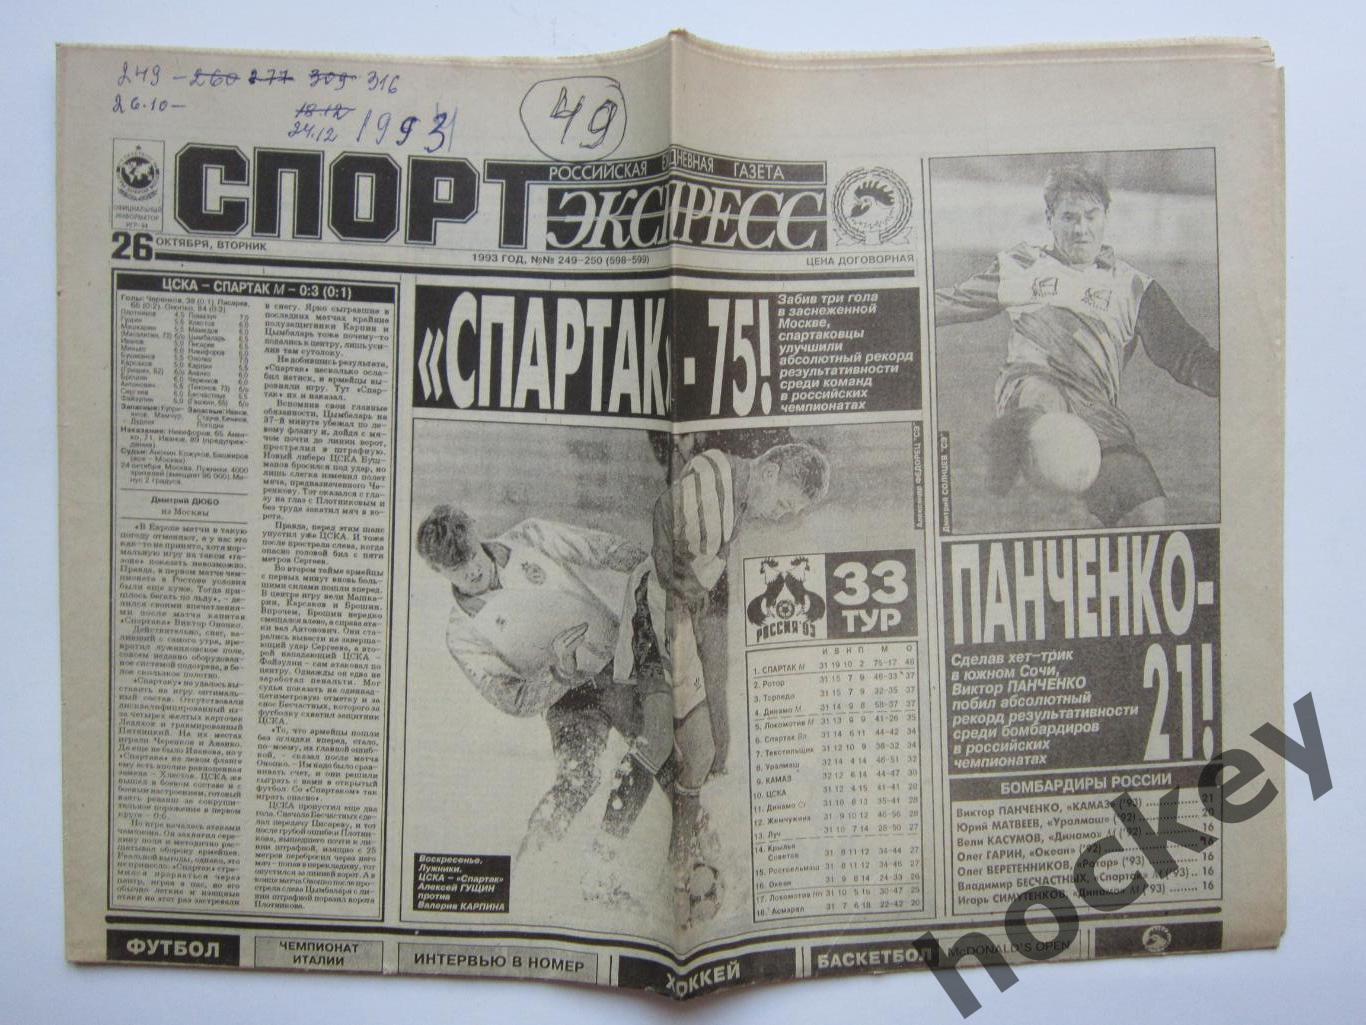 Спорт-Экспресс за 26.10.1993 (8 стр.). ЦСКА - Спартак и др.